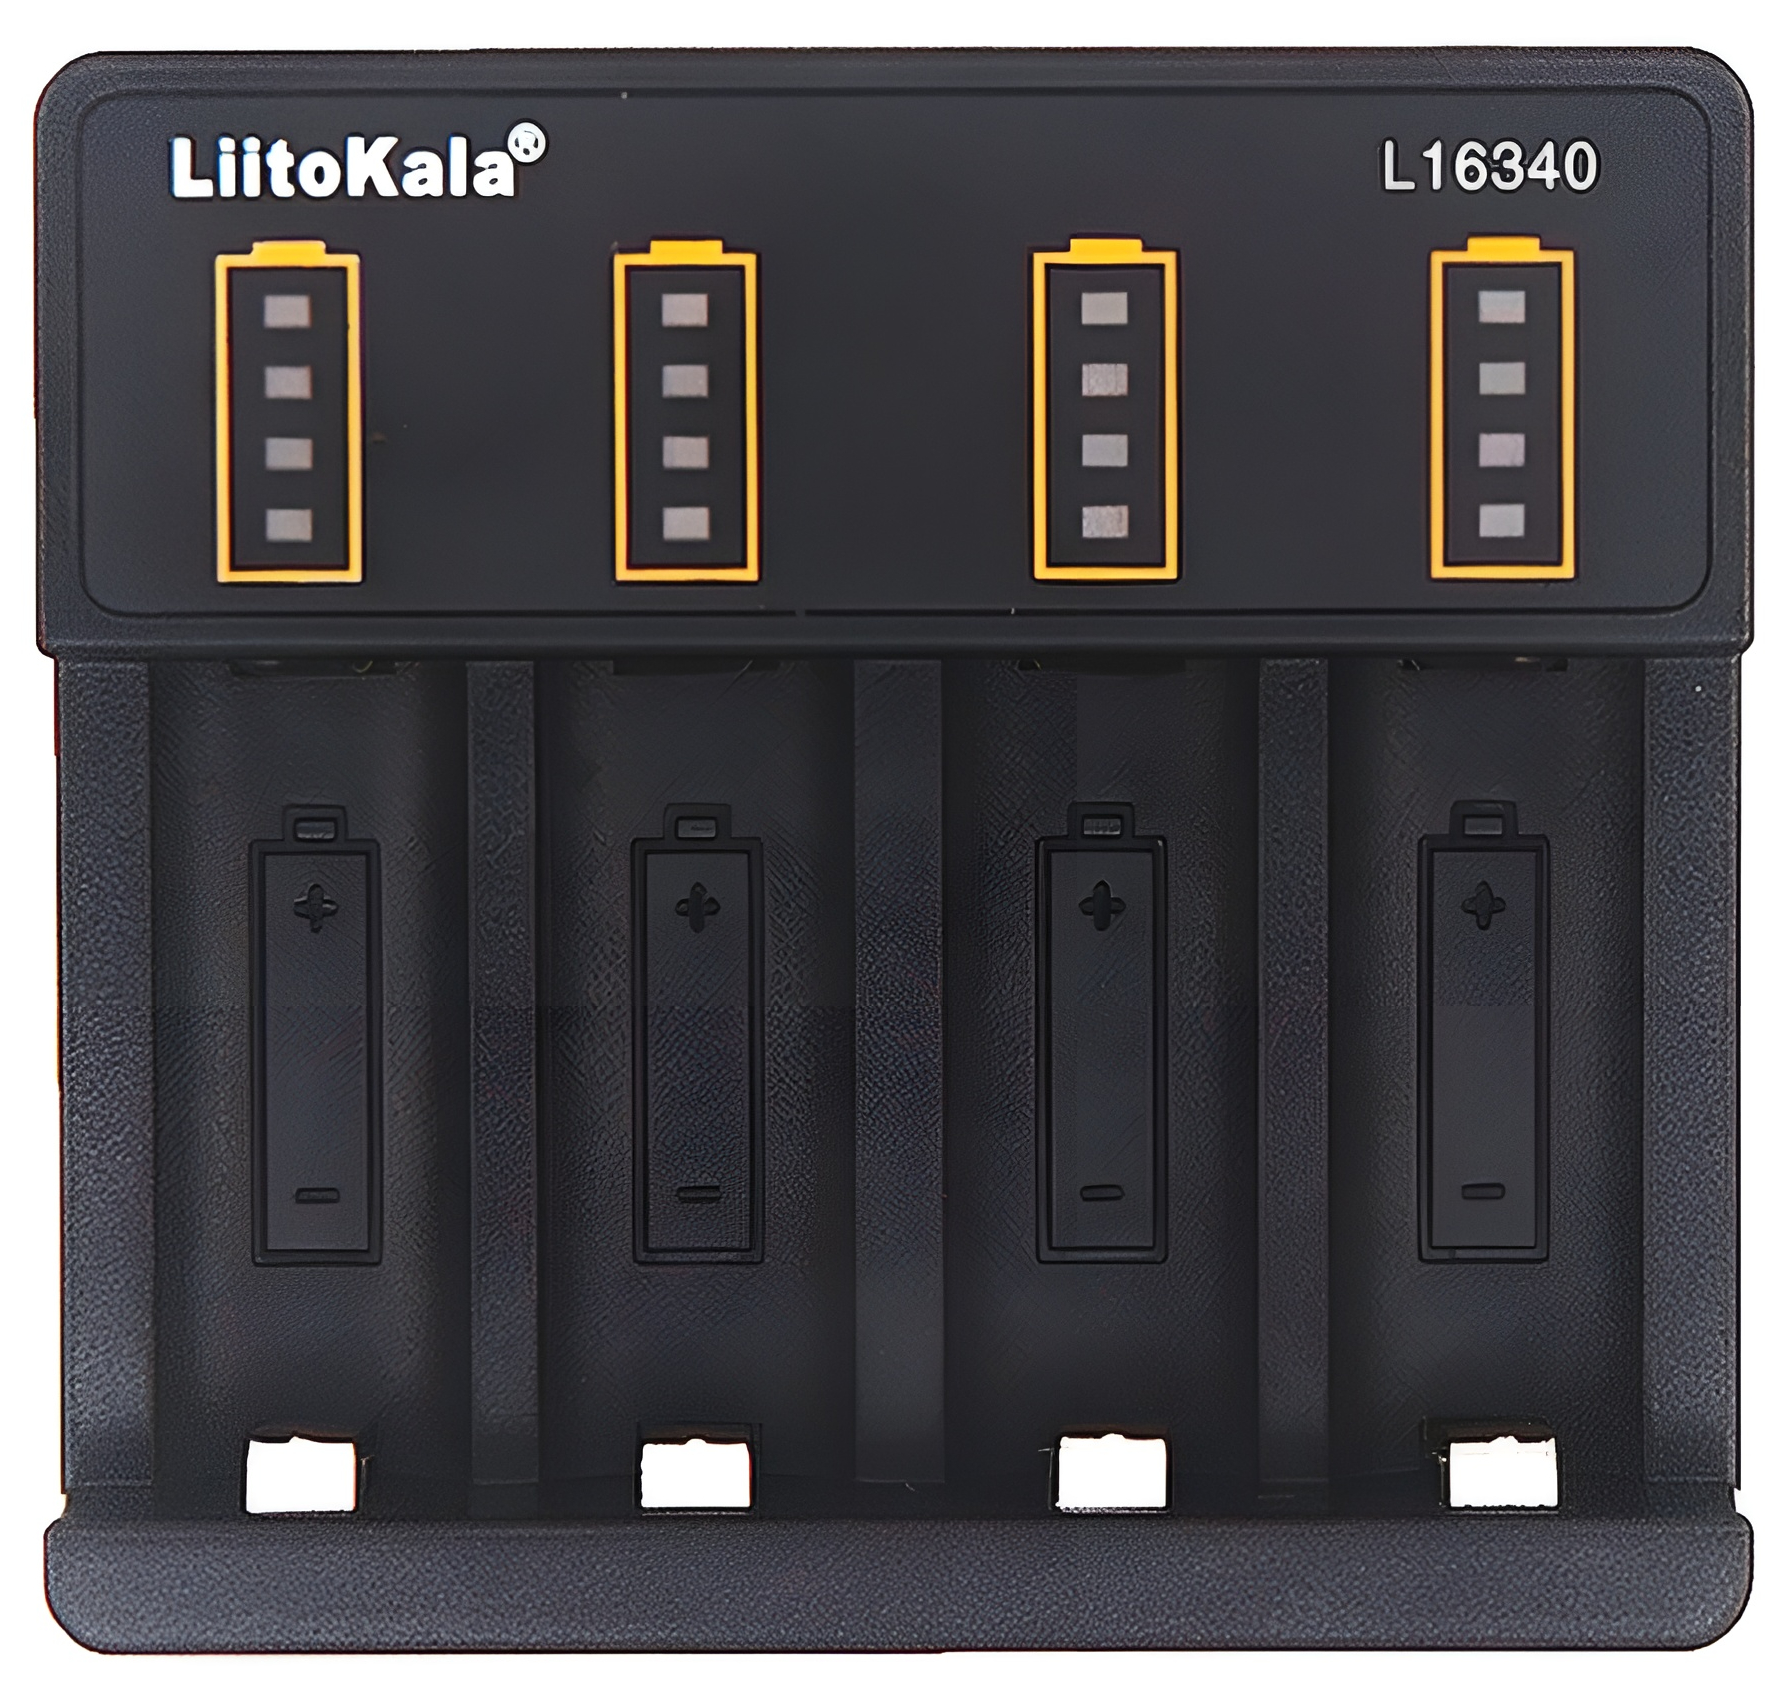 Купить зарядное устройство LiitoKala Lii-L16340 в Киеве